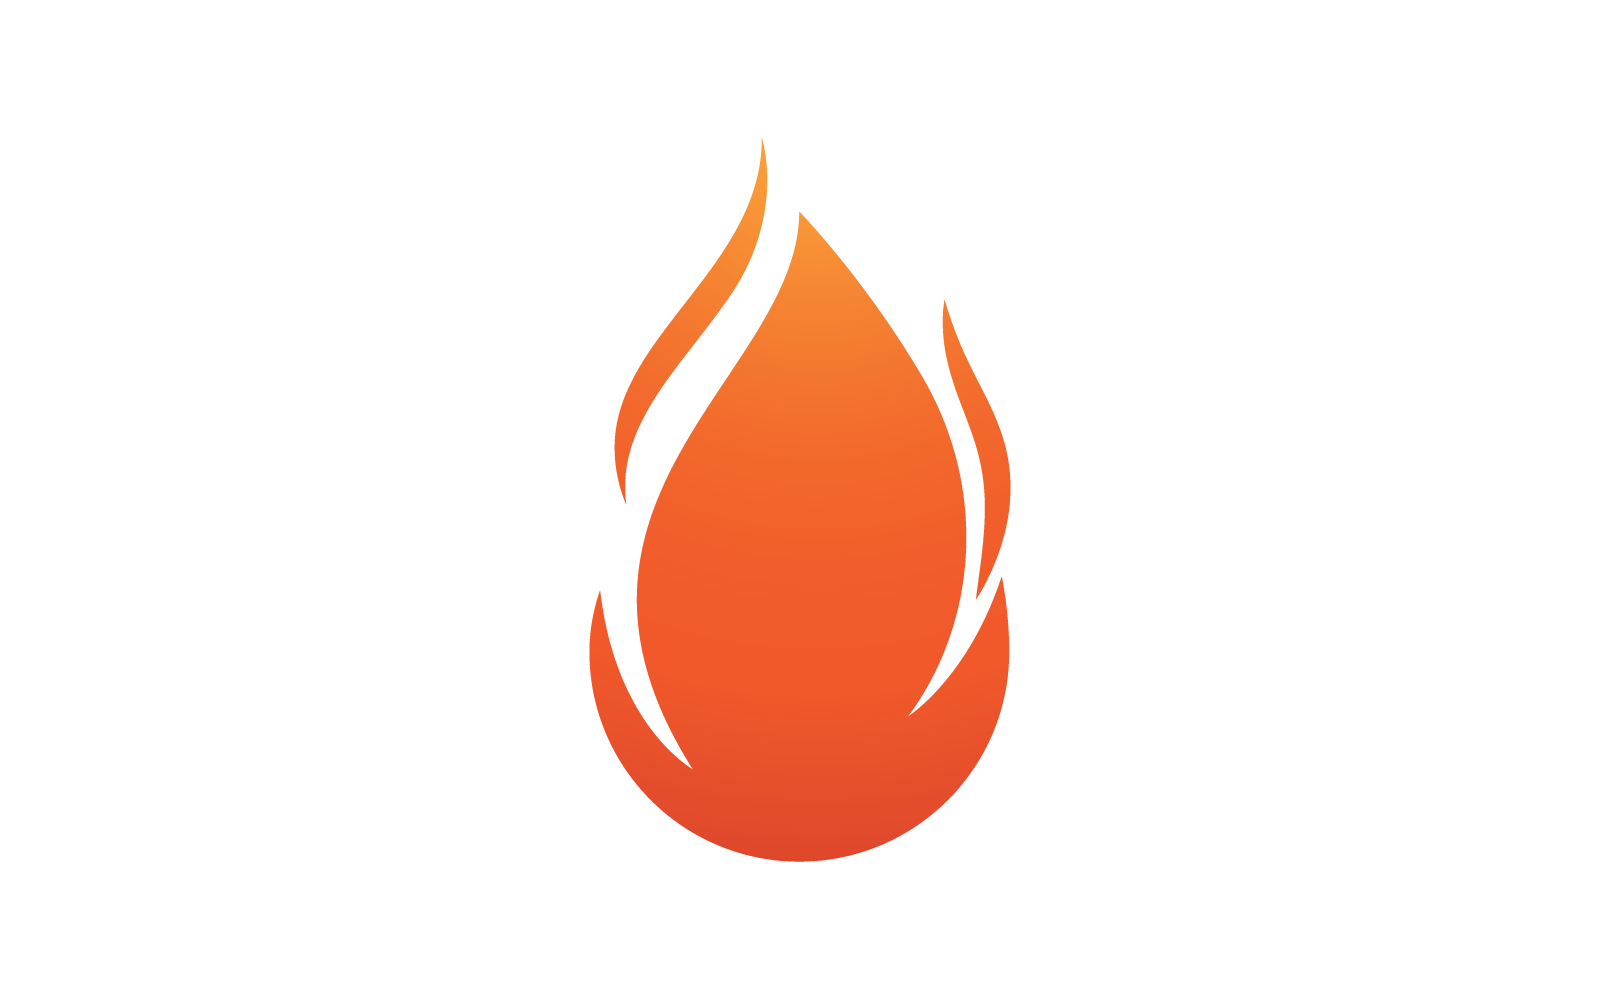 Fire flam logo flat design Template Logo Template